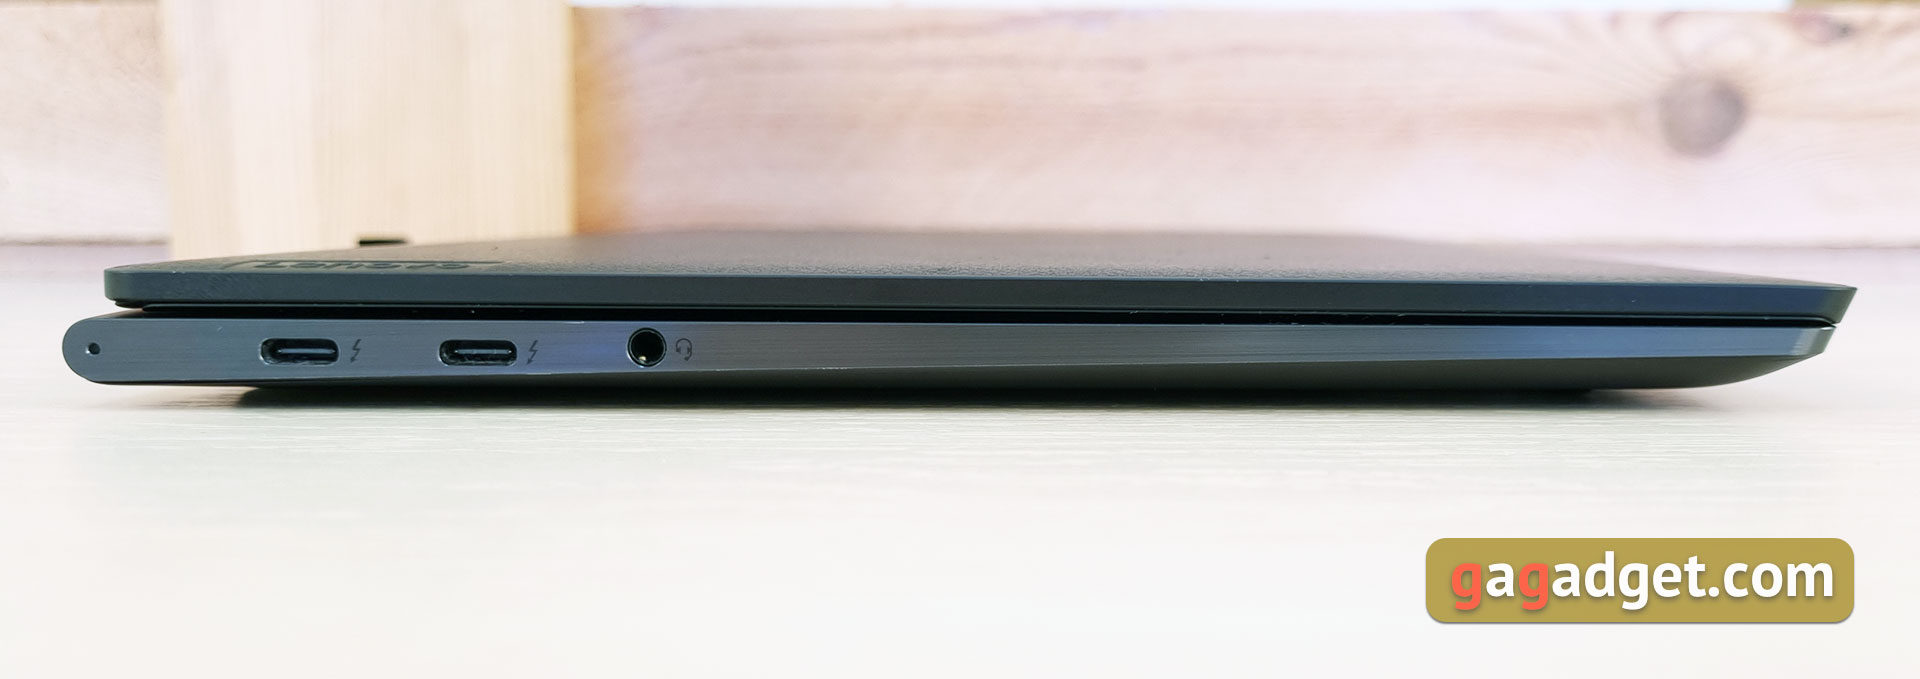 Lenovo Yoga Slim 9i Laptop Test-13